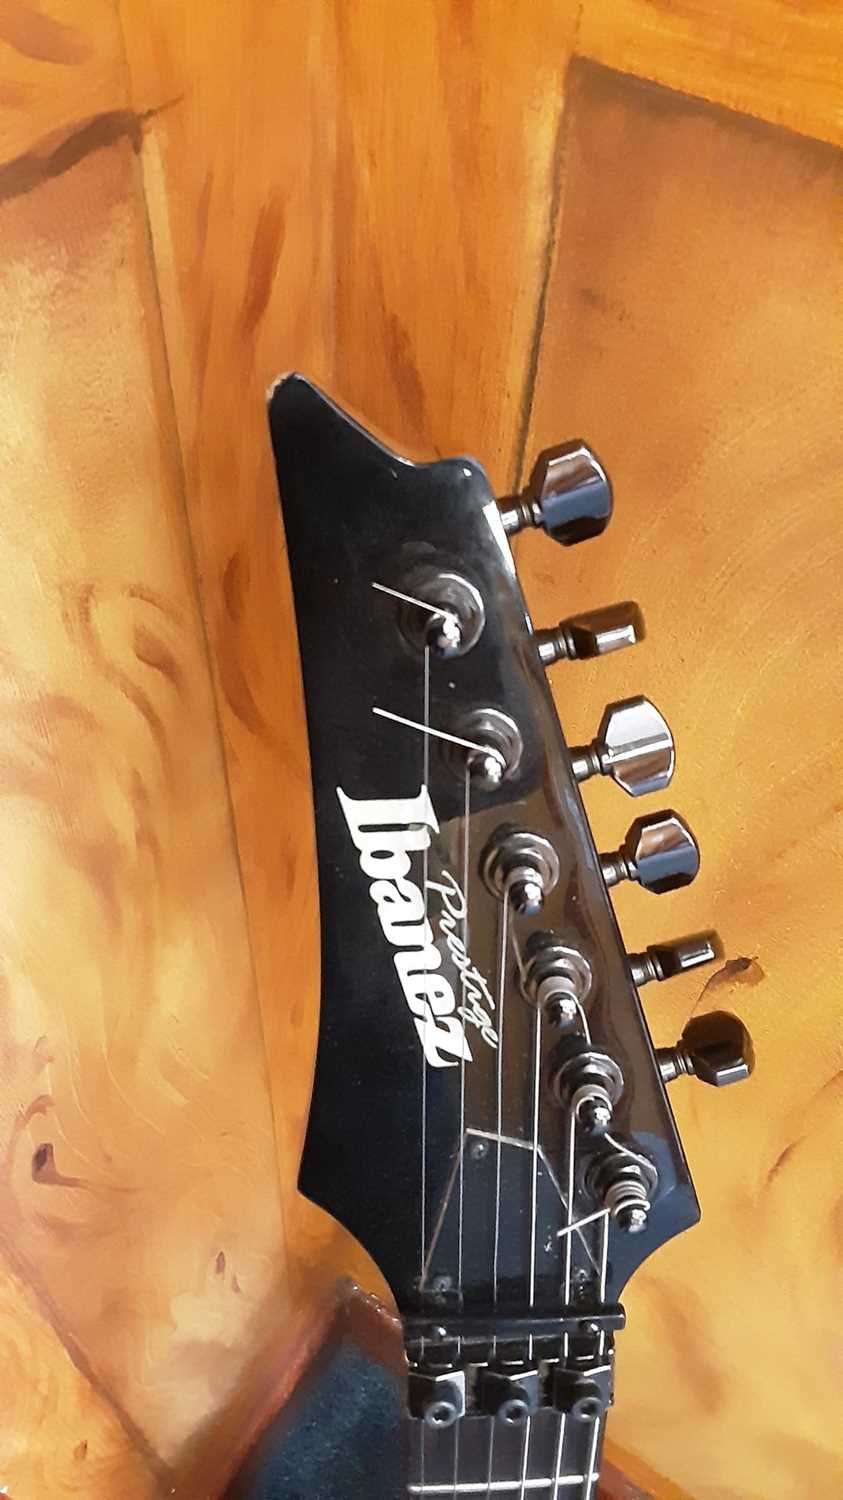 Ibanez Prestige left-handed six string electric guitar, black finish - Image 2 of 3